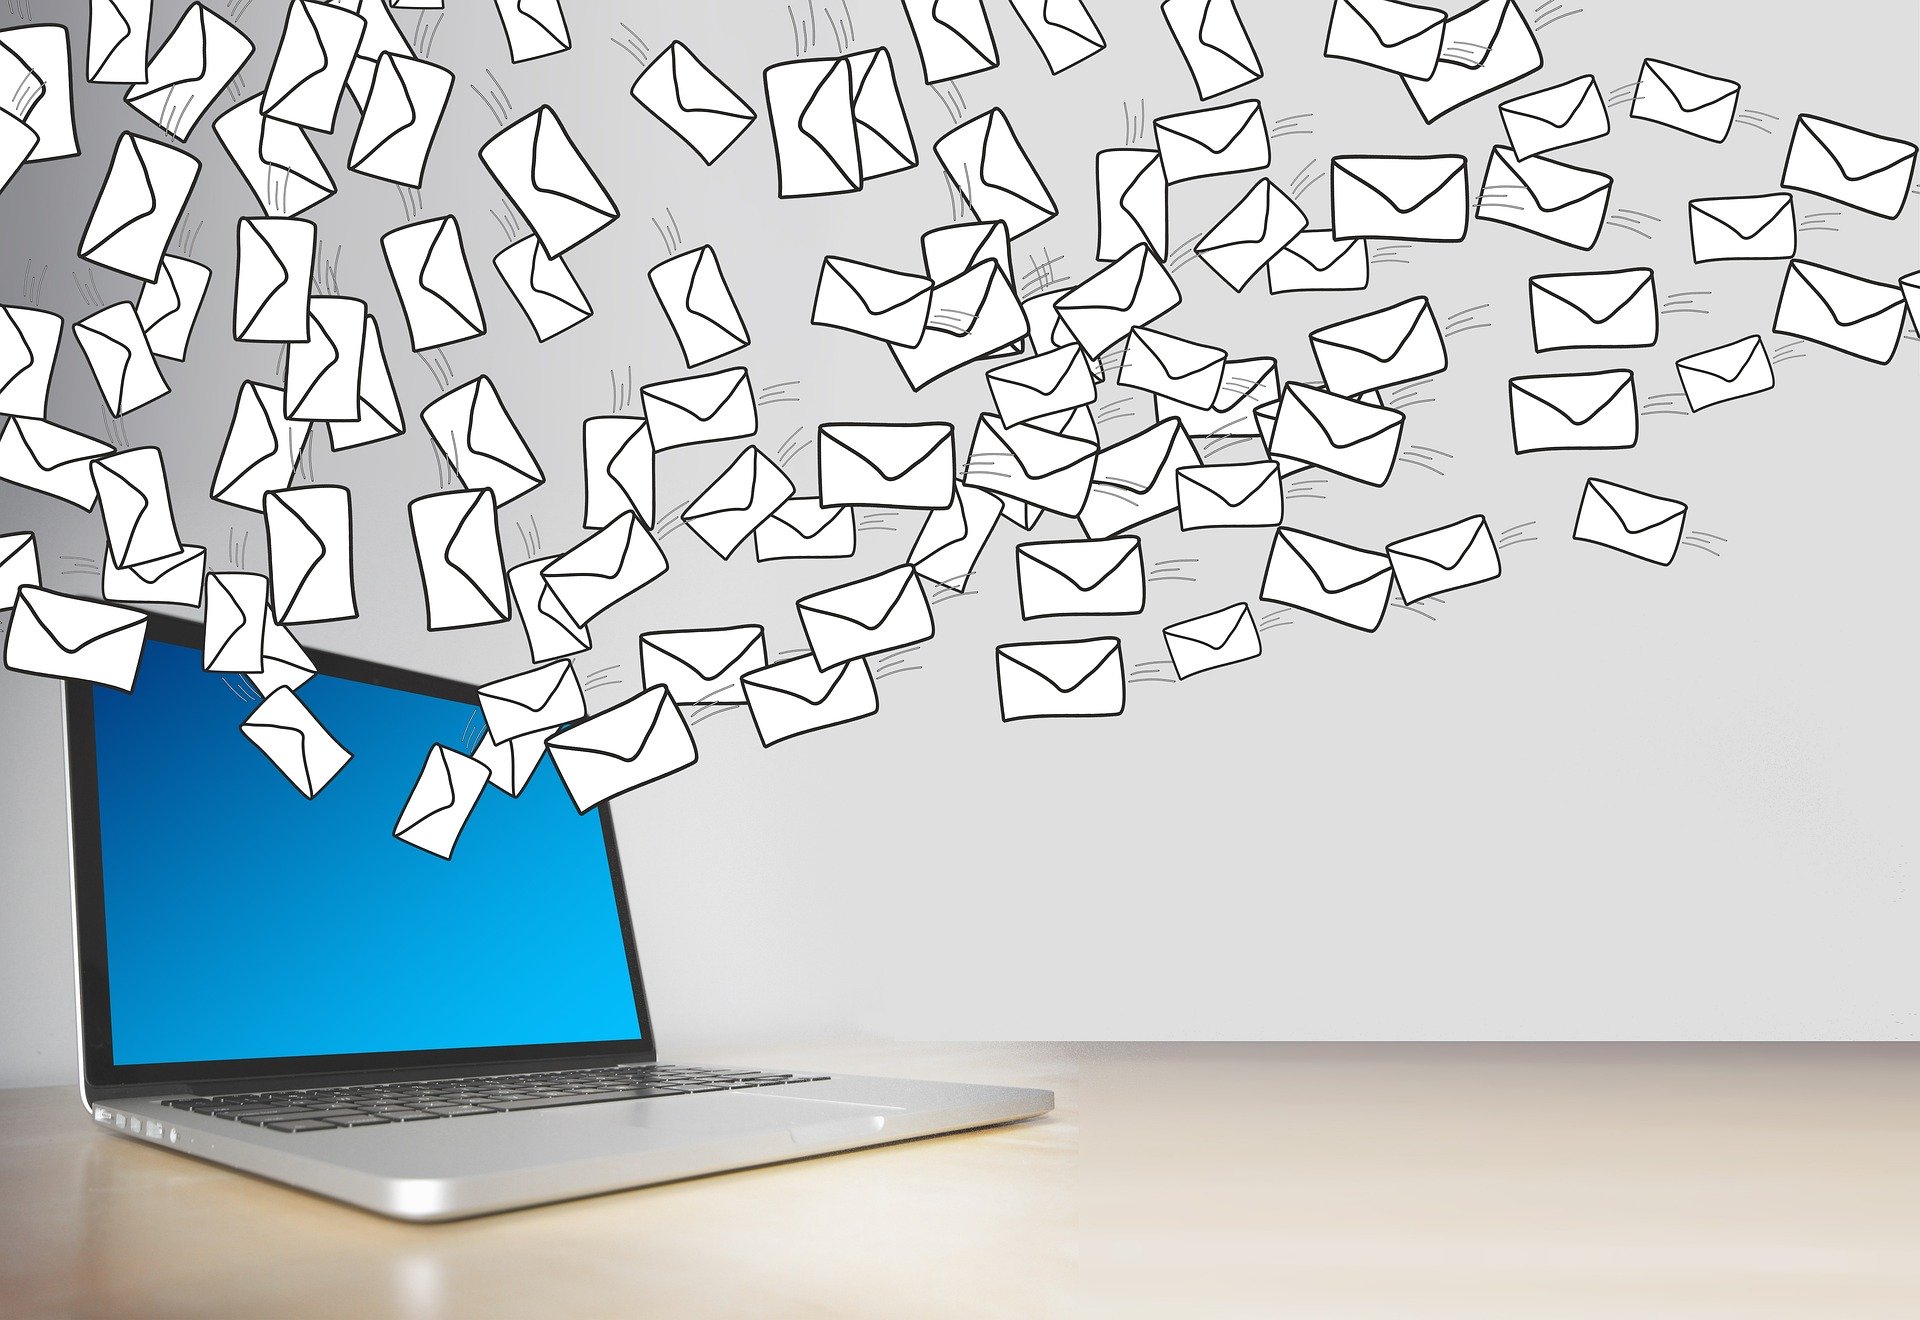 Tout ce que vous devez savoir pour envoyer des courriels sans tomber dans les spams